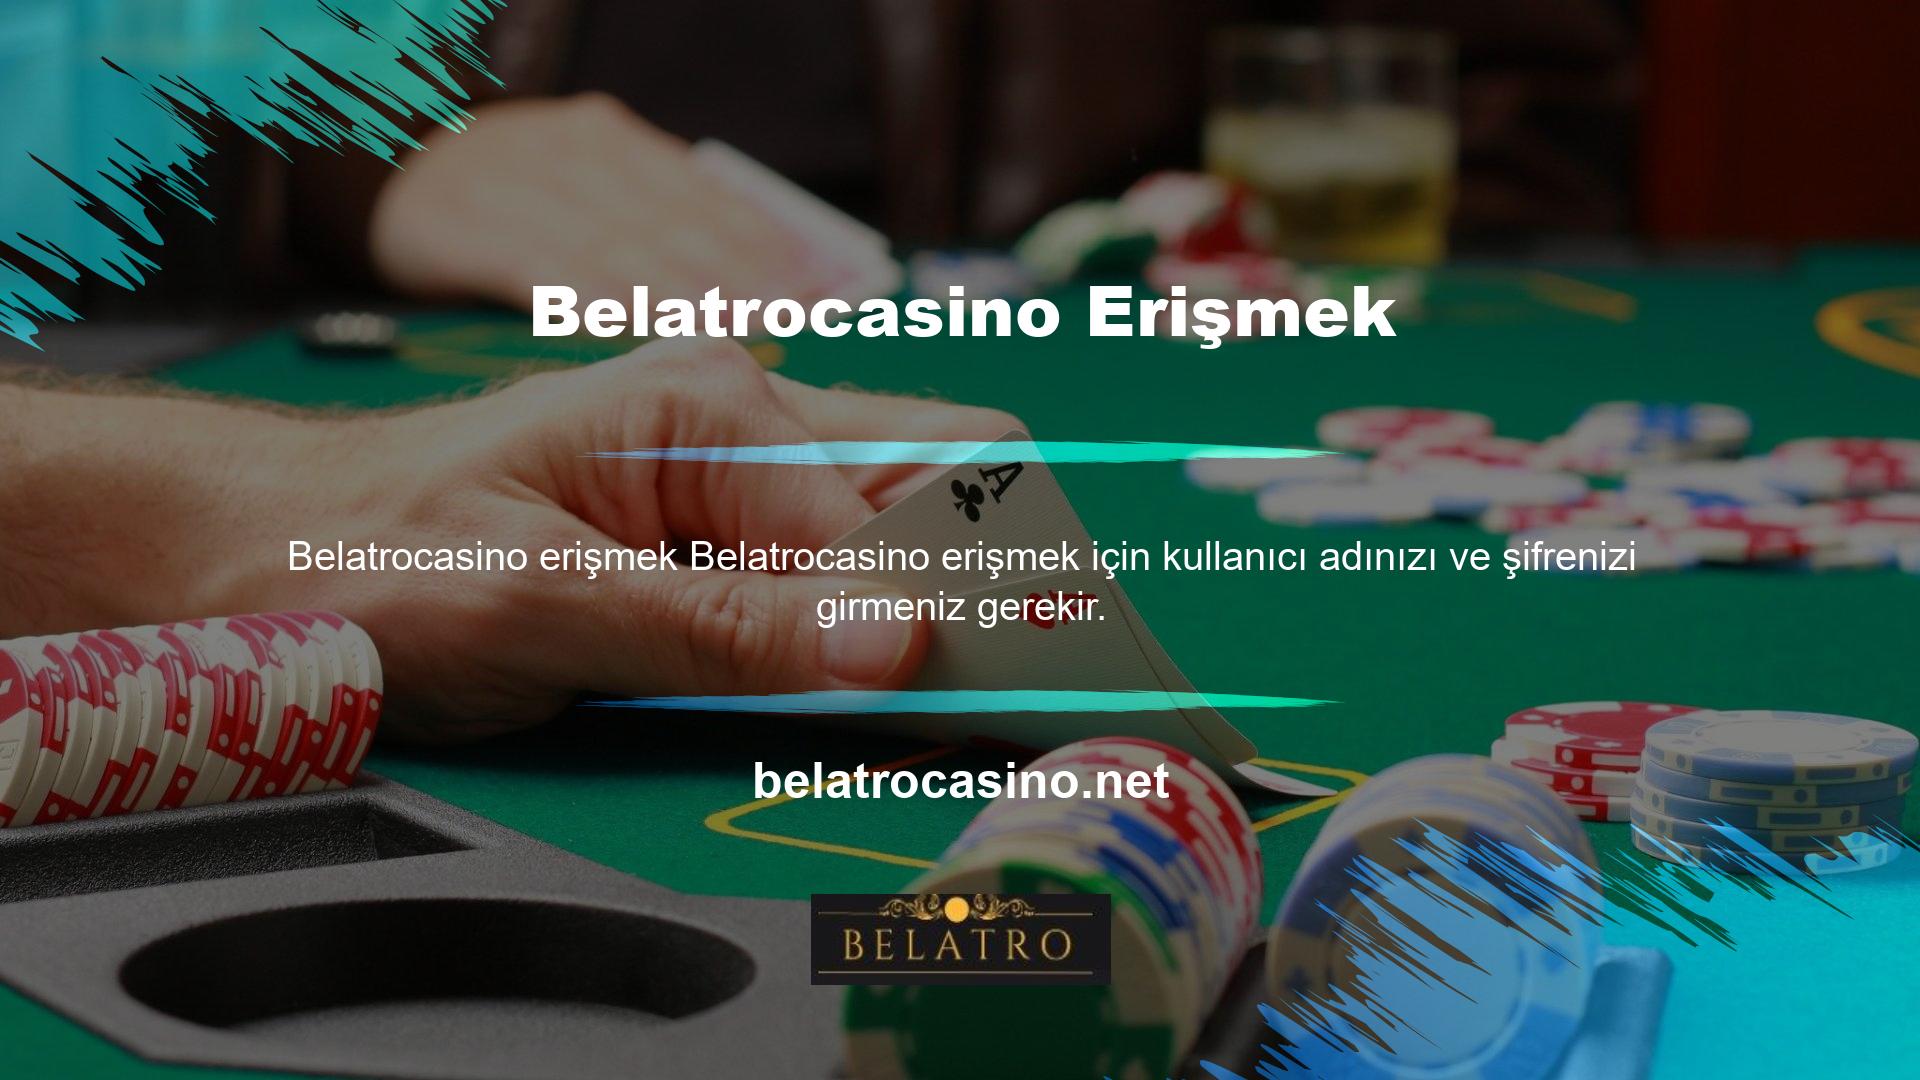 Türkiye’nin en güvenli online poker sitesinde oynamak istiyorsunuz